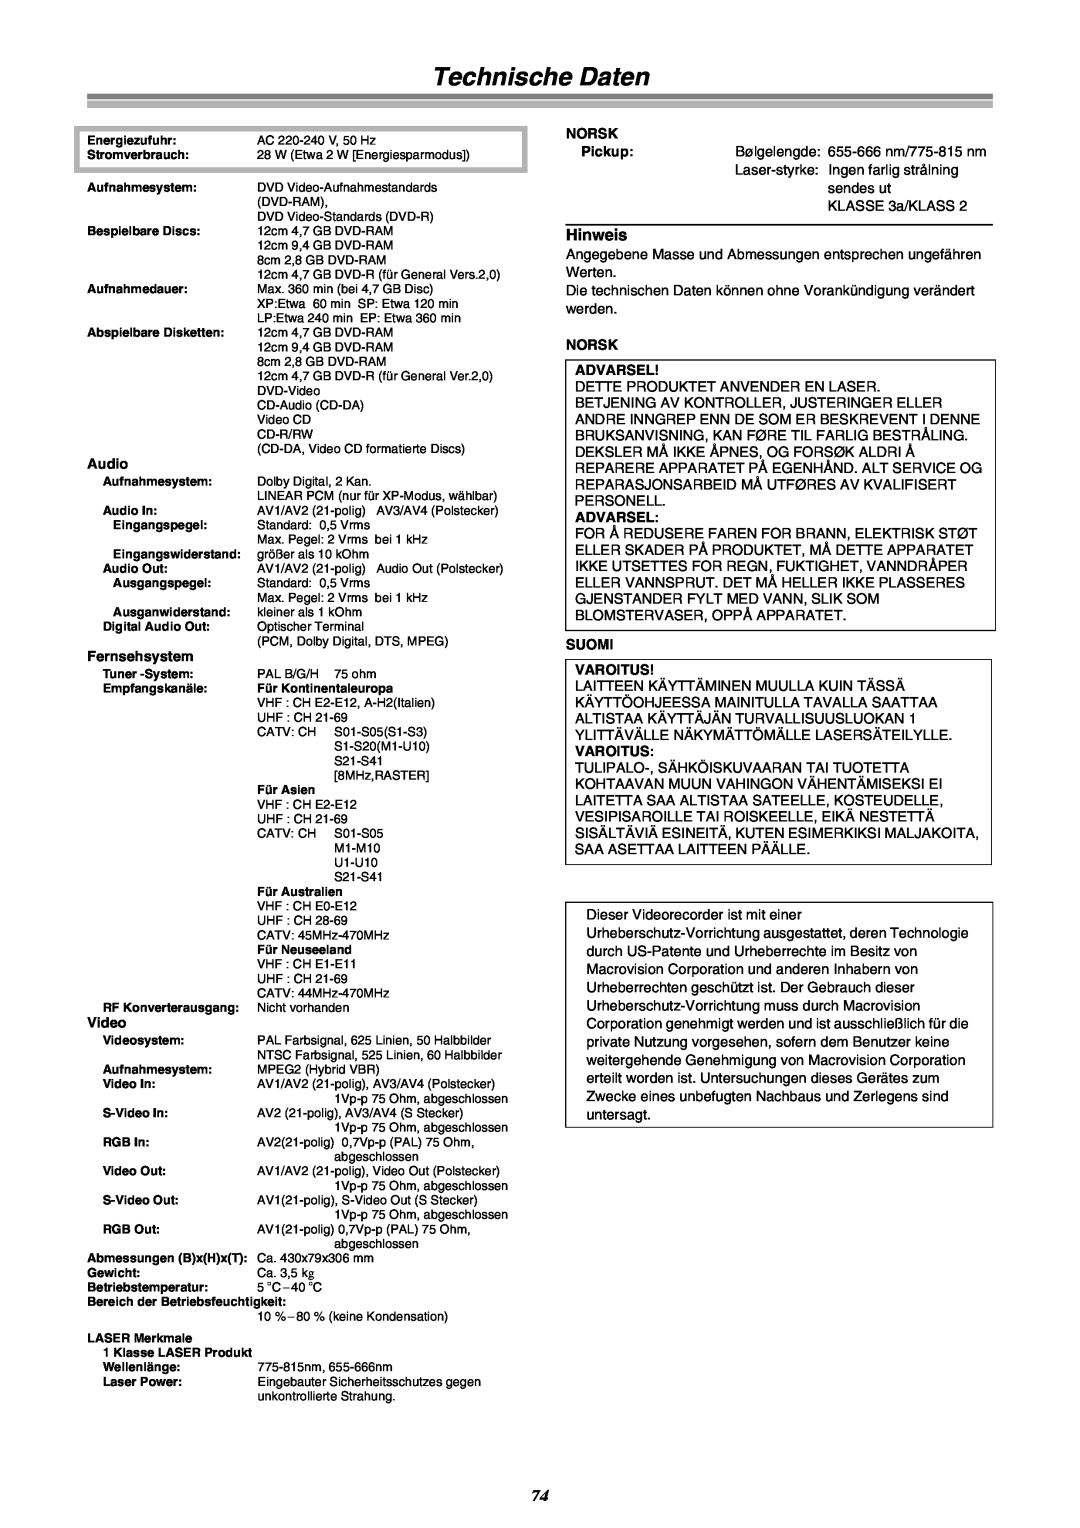 Panasonic DMR-E30 manual Technische Daten, Hinweis 